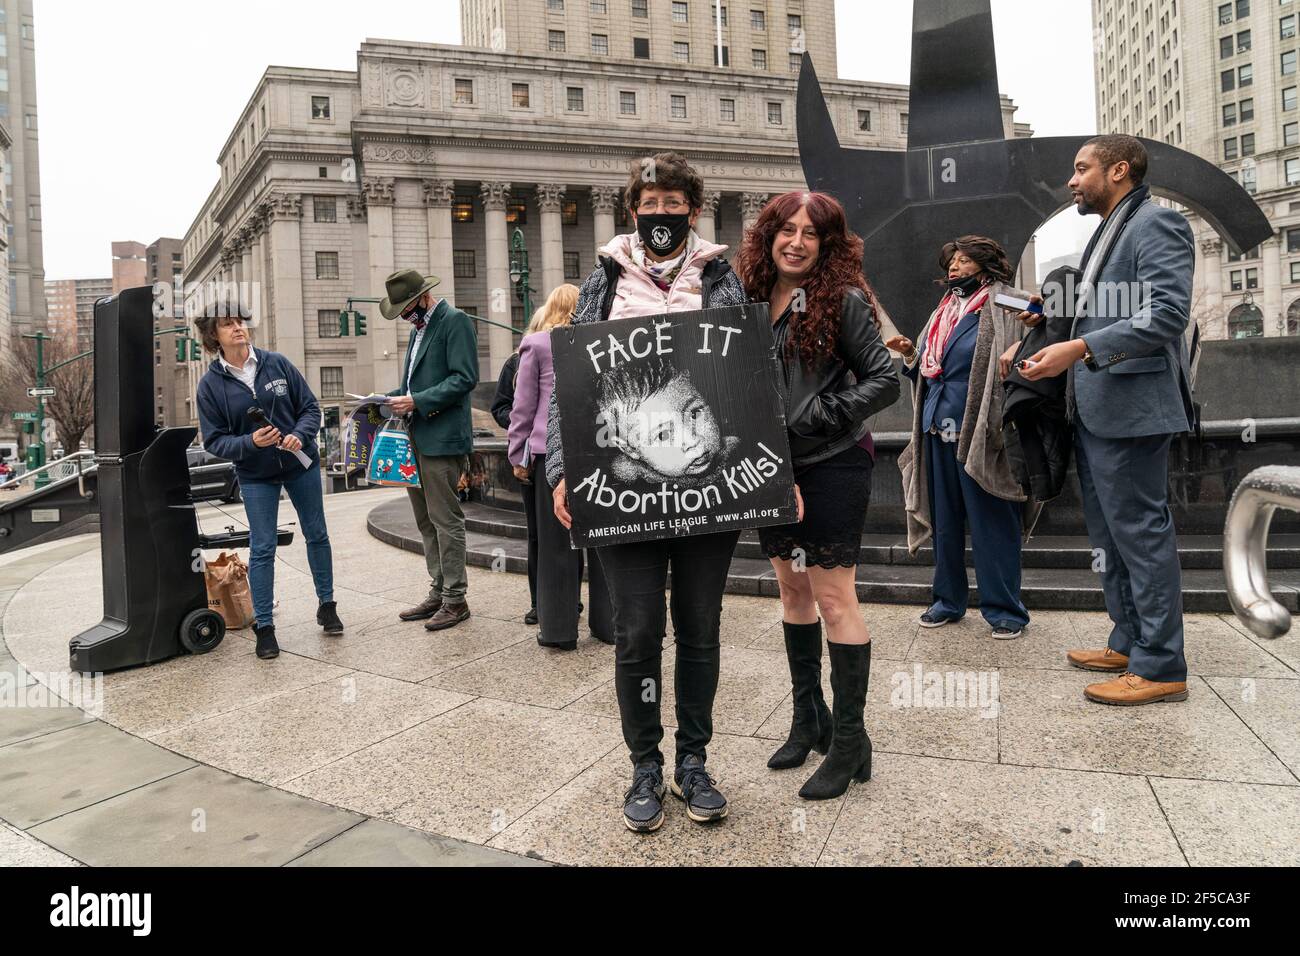 New York, NY - 25. März 2021: Anti-Abtreibungsaktivisten versammeln sich auf dem Foley Square und fordern, die Entscheidung des Obersten Gerichtshofs von Roe gegen Wade zu überschreiben Stockfoto